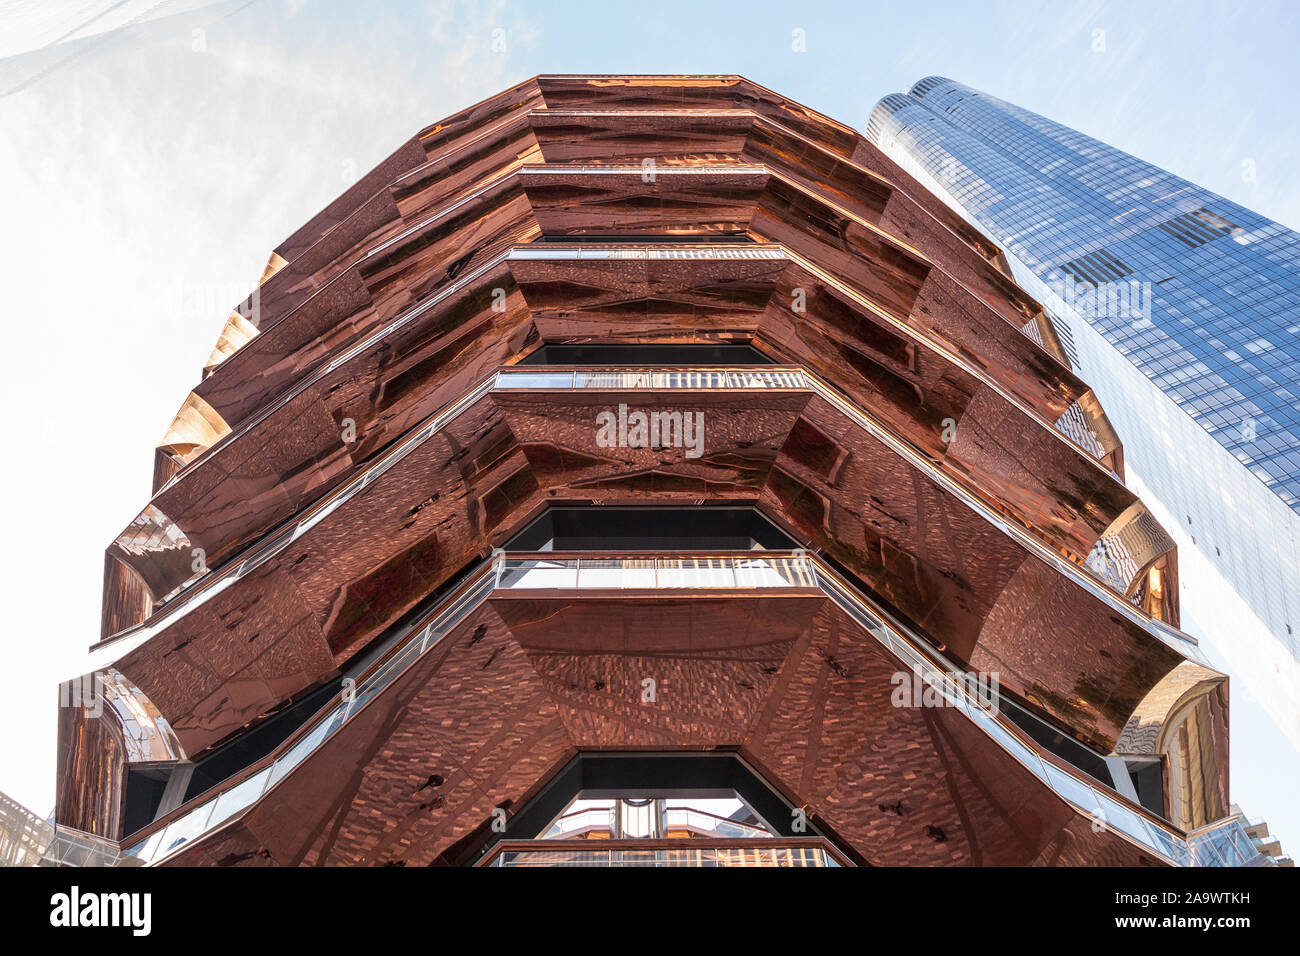 El Buque, un hito Thomas Heatherwick studio estructura diseñada en el desarrollo de los astilleros de Hudson, Nueva York, NY, EE.UU. Foto de stock